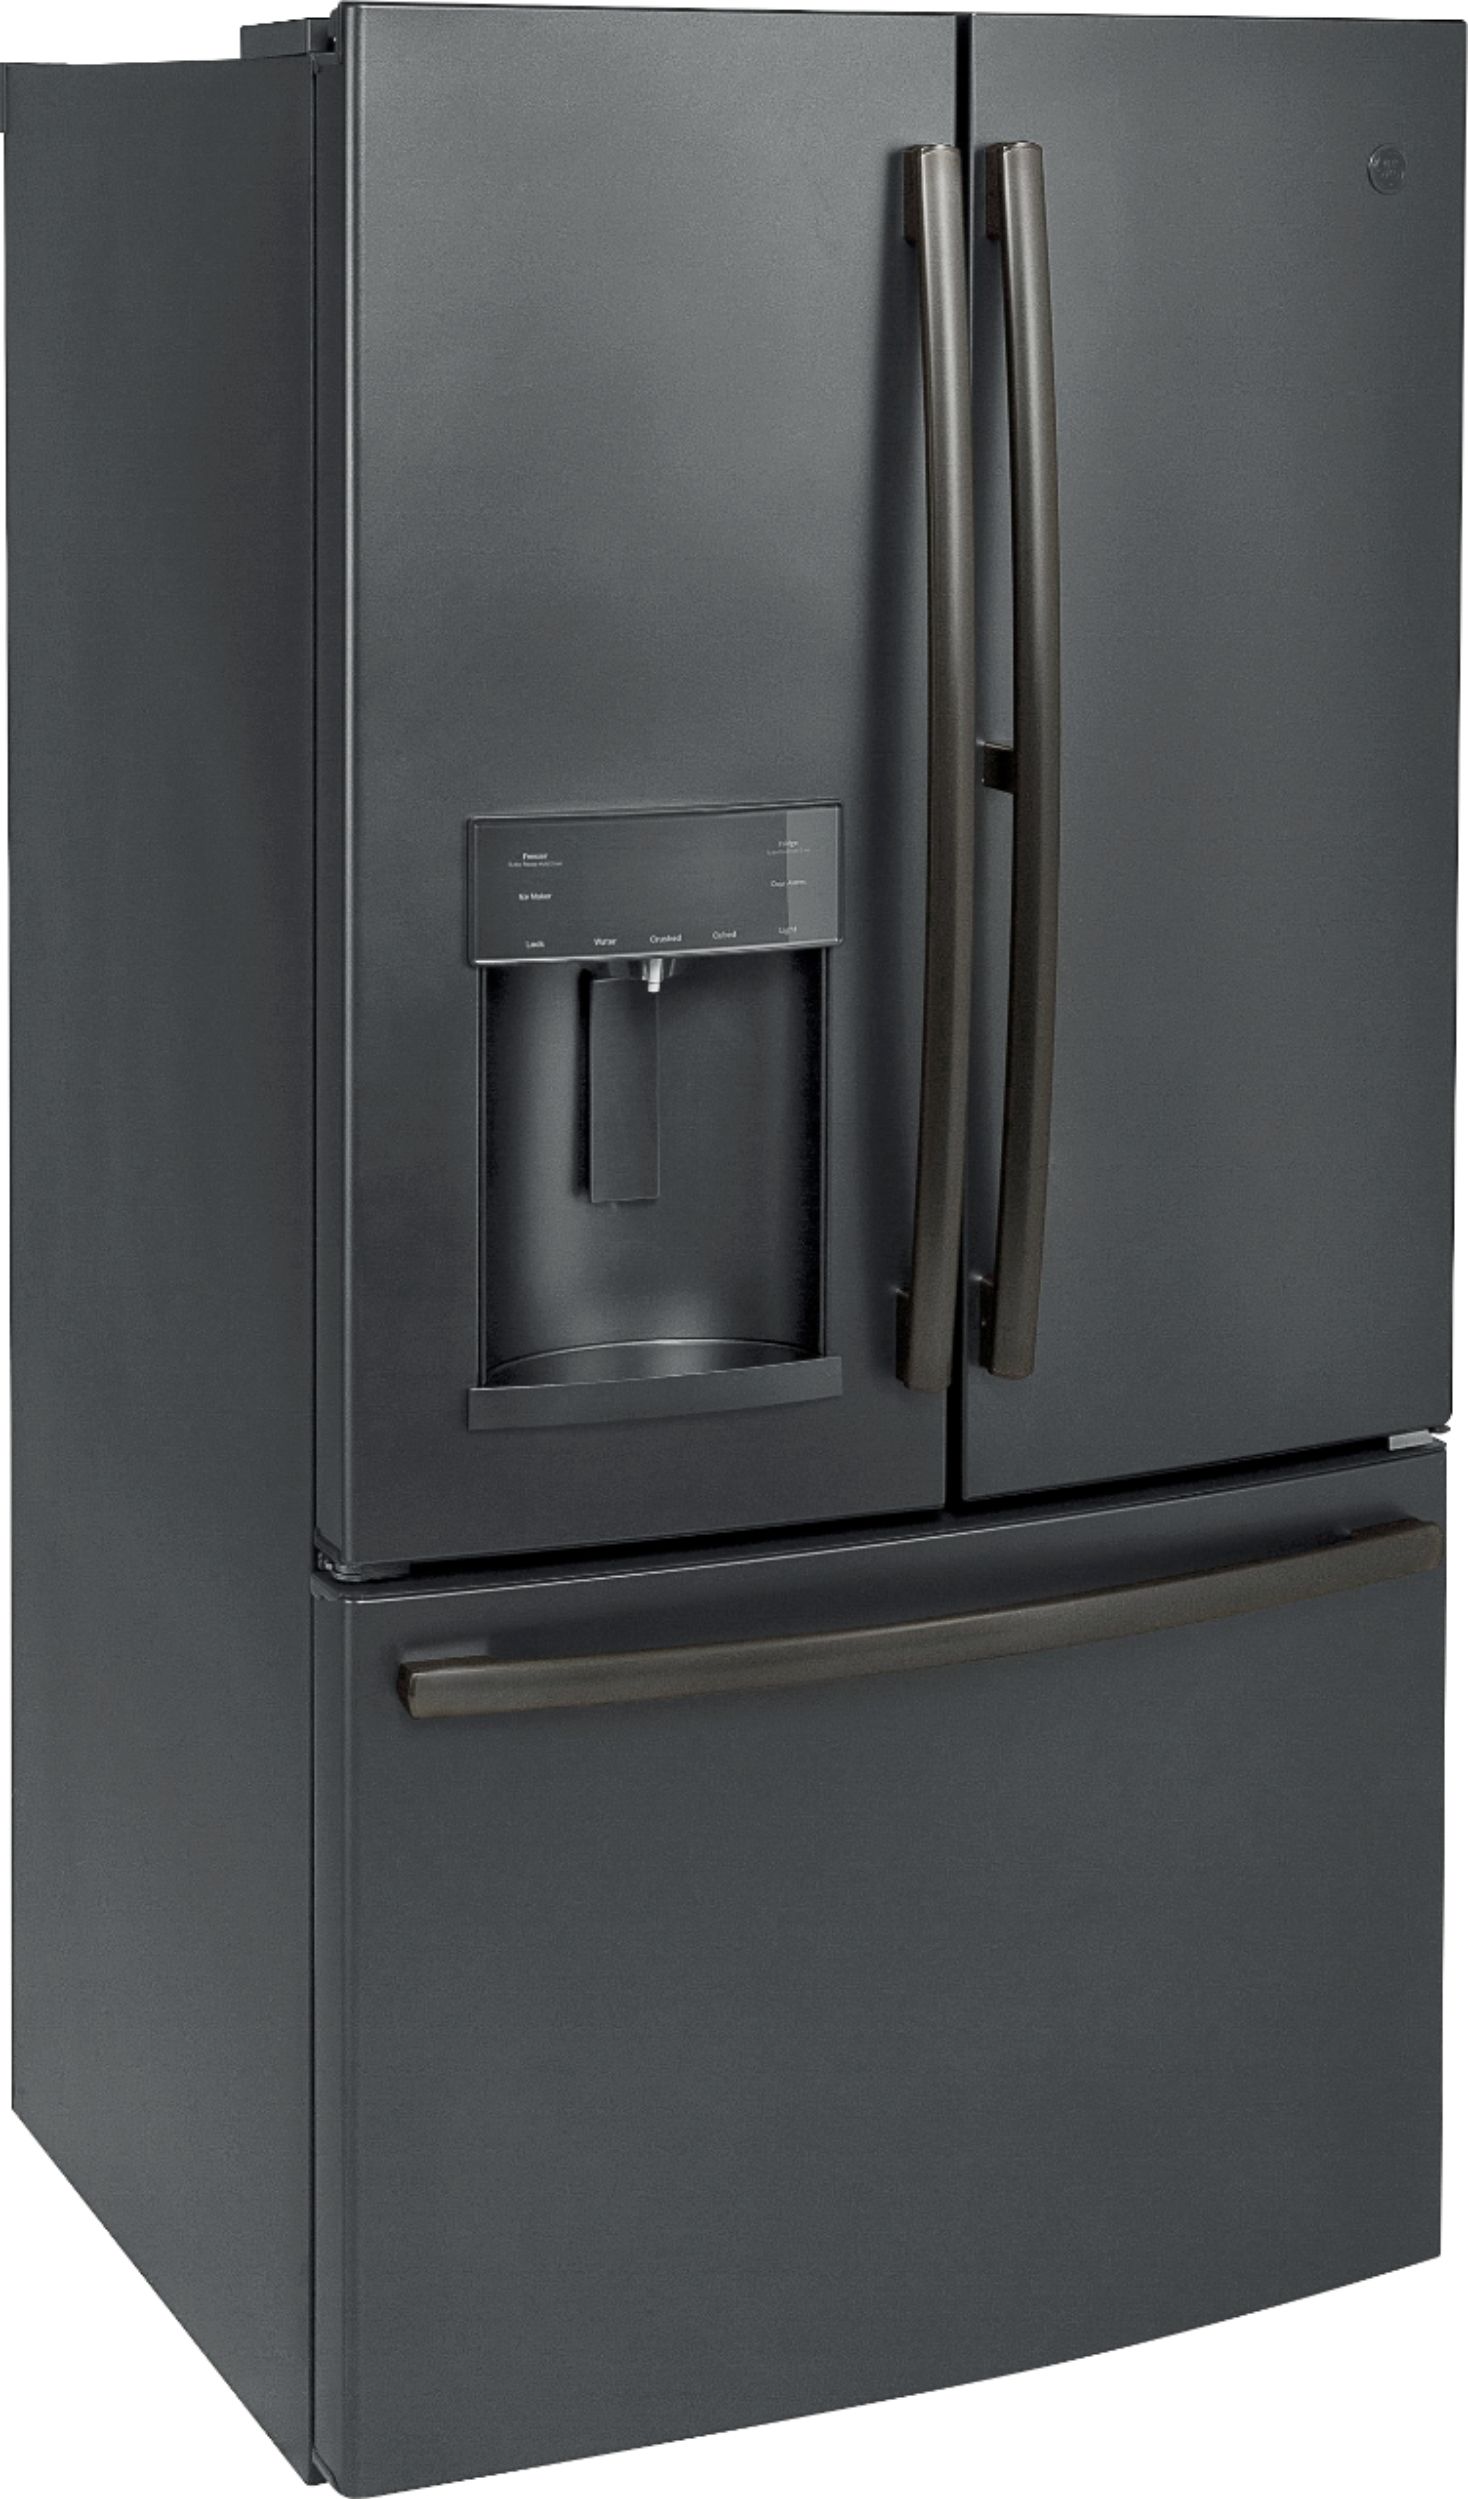 Angle View: GE - 27.7 Cu. Ft. French Door-in-Door Refrigerator with External Water & Ice Dispenser - Fingerprint resistant black slate